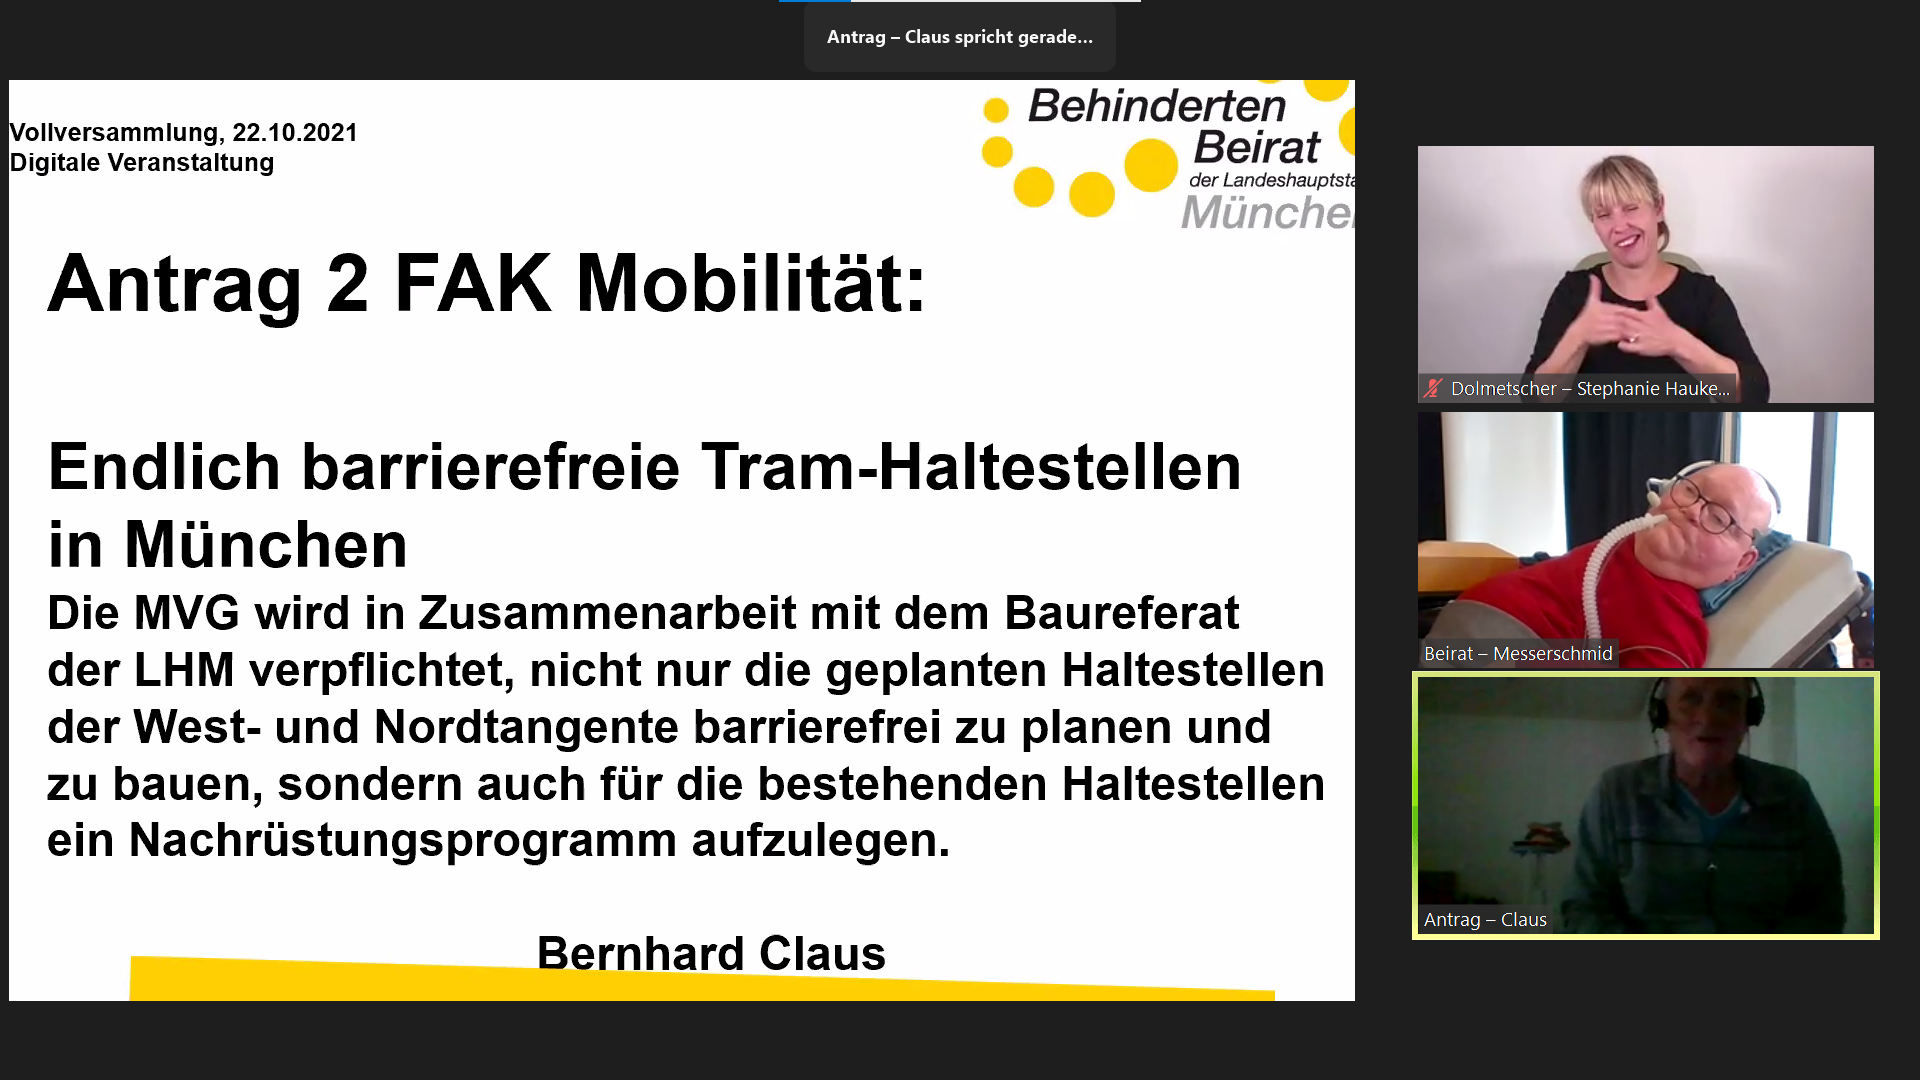 Antrag barrierefreie Tram-Haltestellen wird von Bernhard Claus vorgestellt